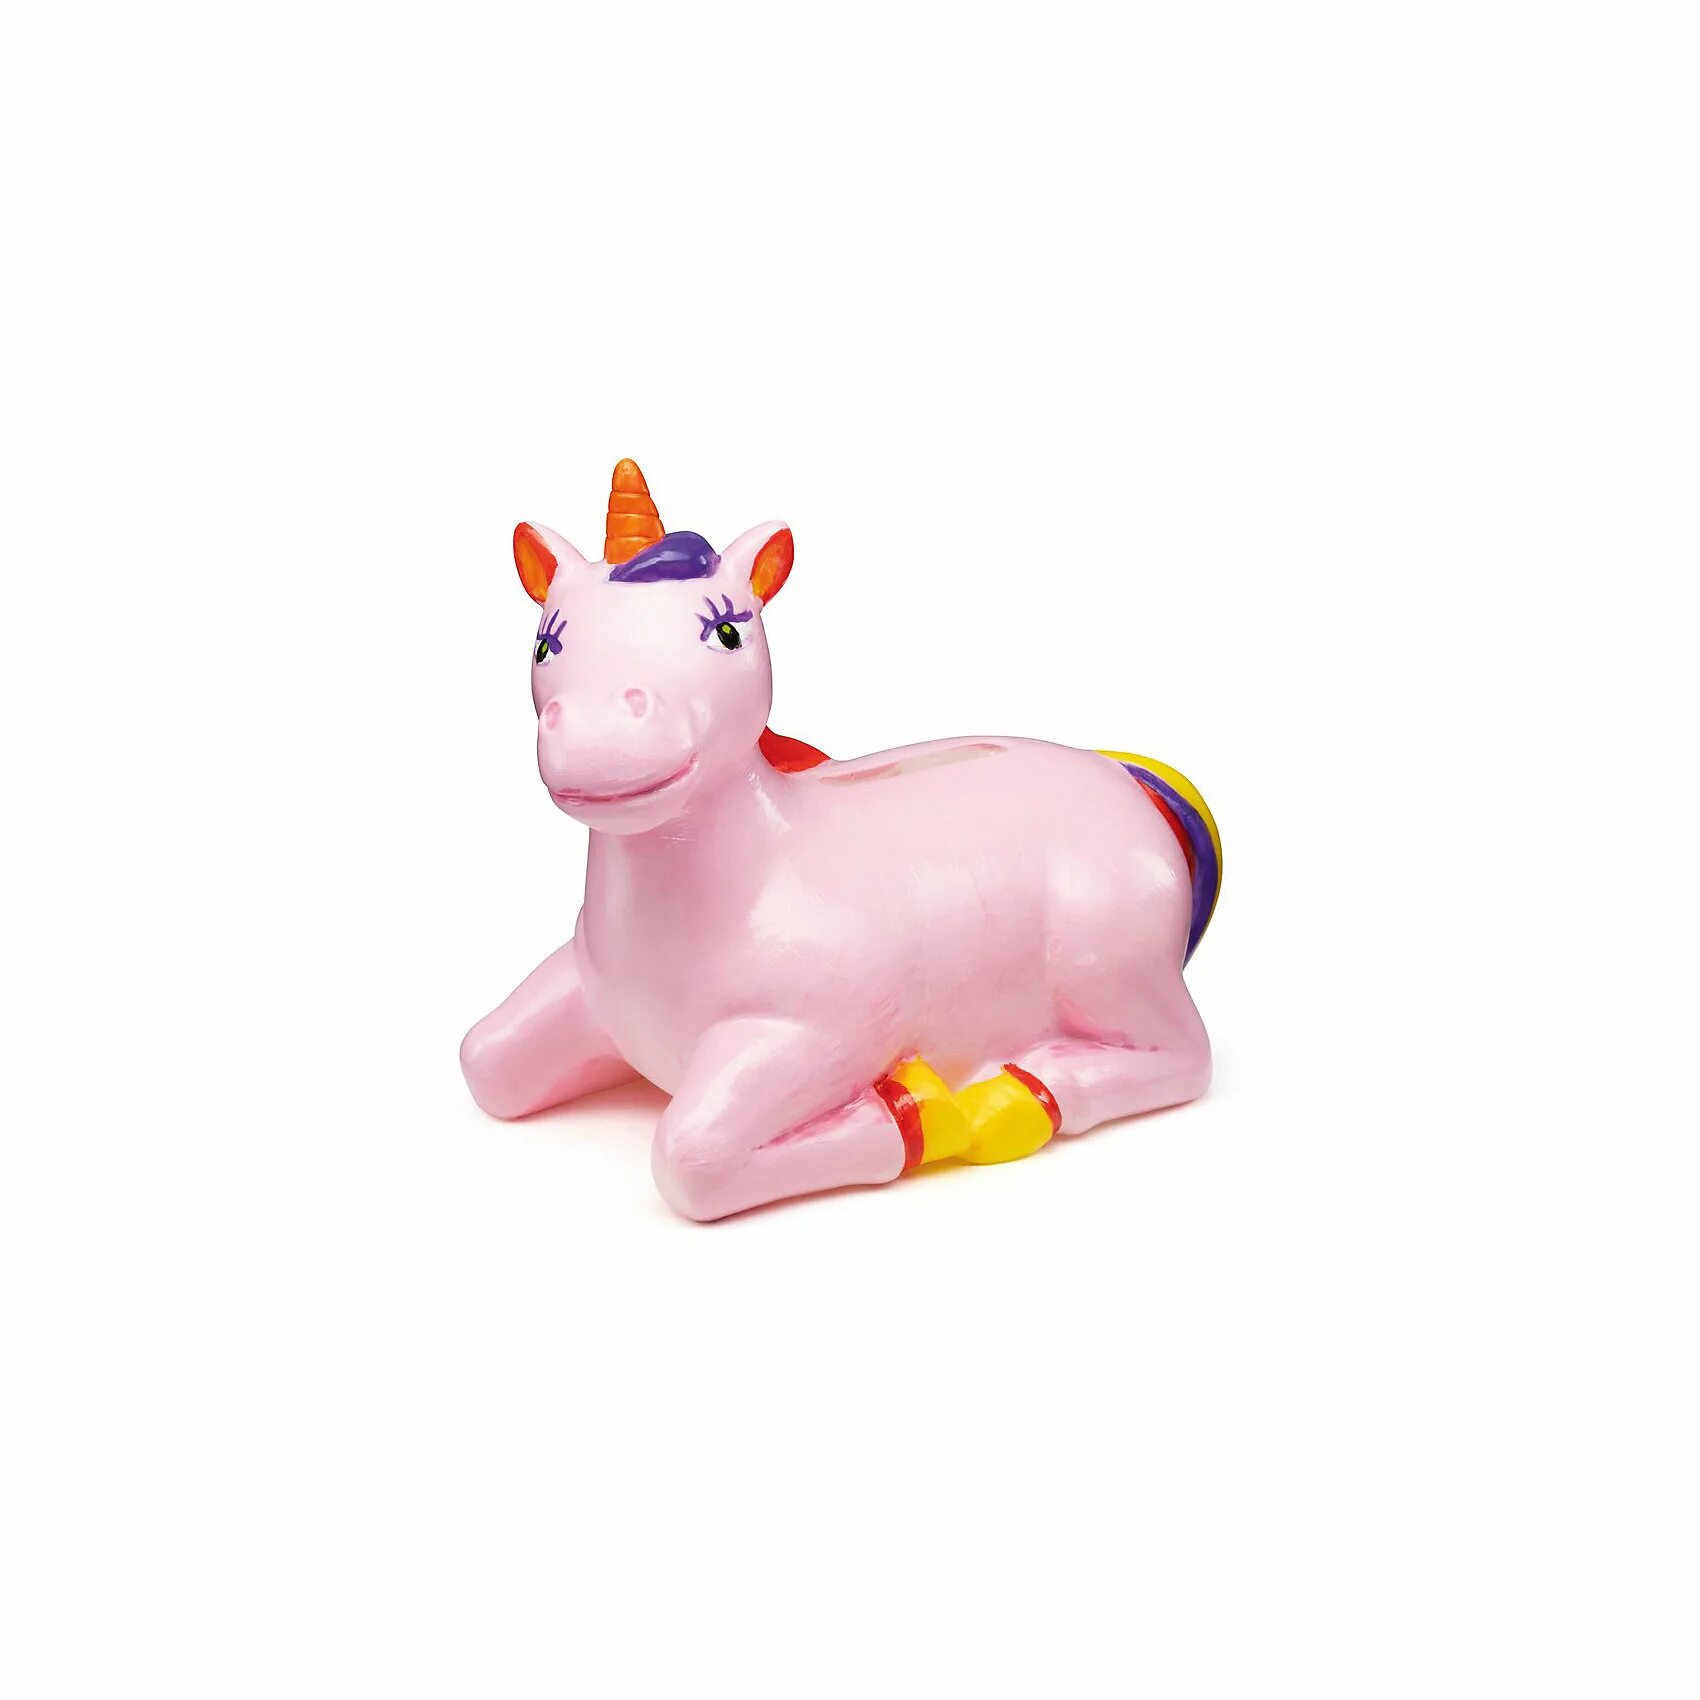 Violent coloring piggy bank unicorn